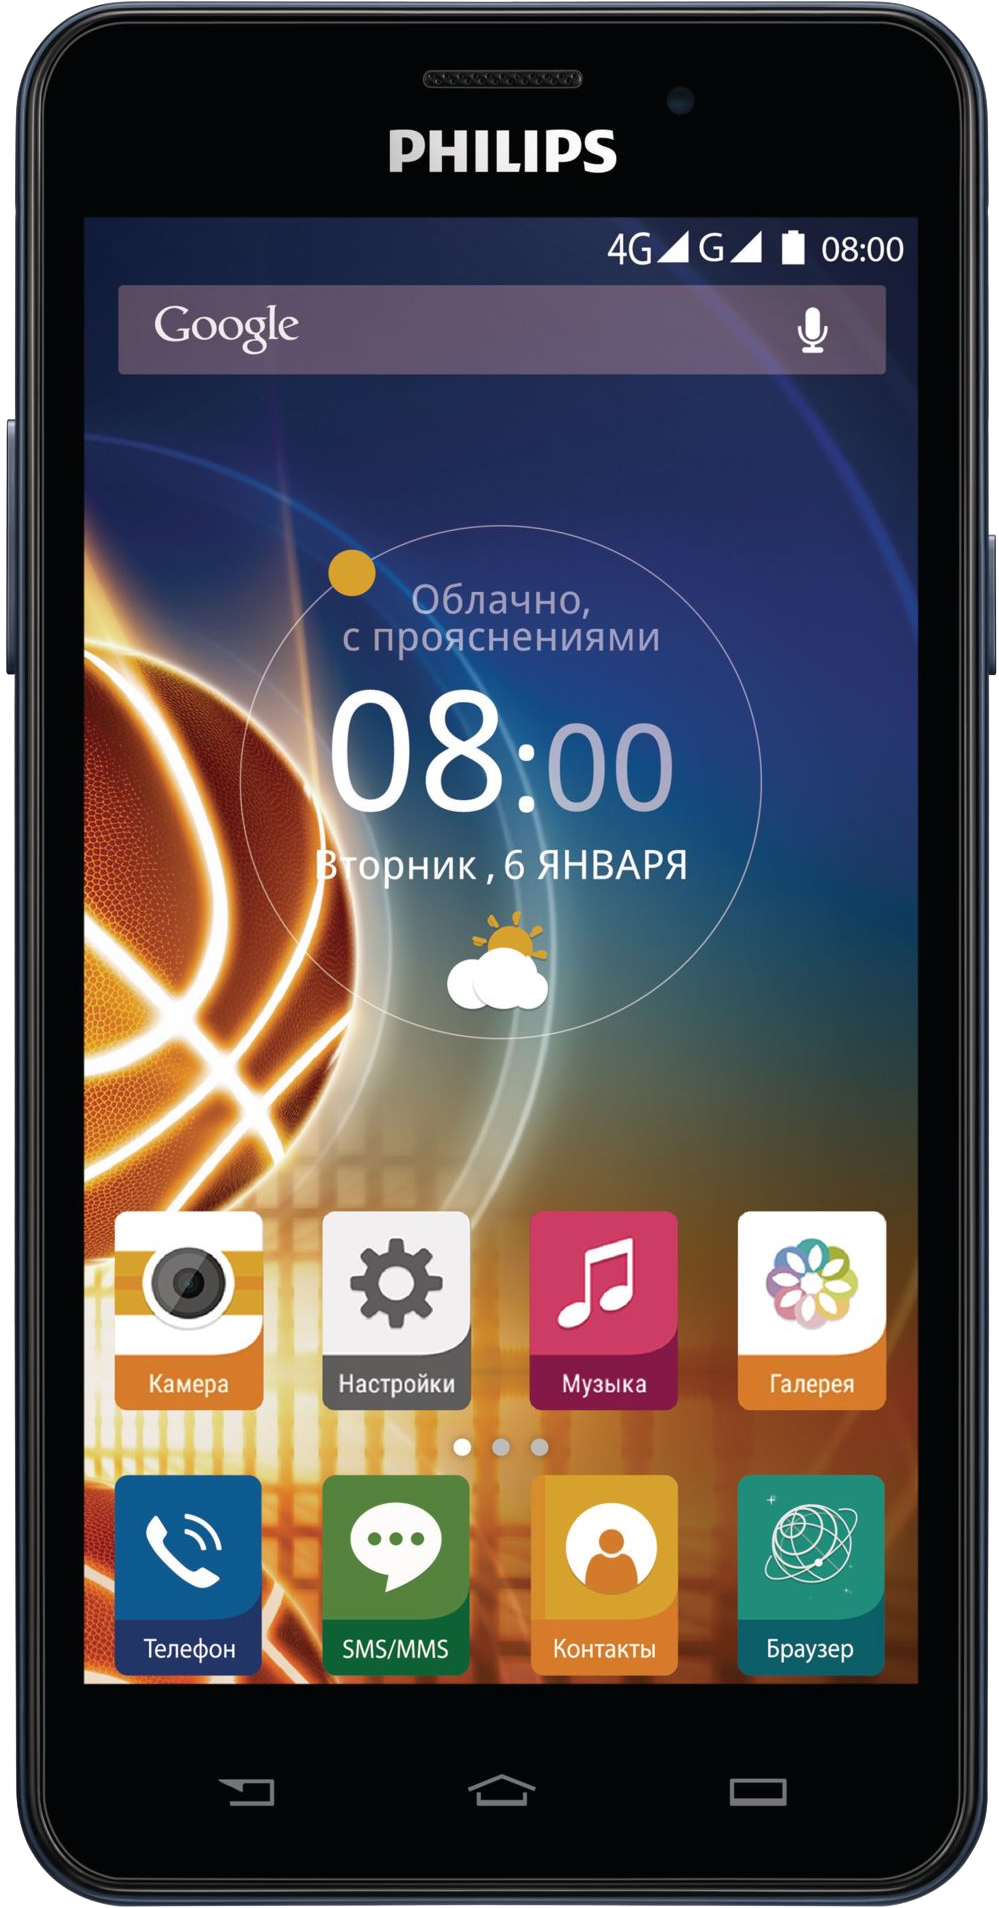 Телефон андроид филипс. Смартфон Philips Xenium v526 LTE. Philips Xenium смартфон сенсорный. Сенсорный телефон Филипс Xenium v526. Philips Xenium Android 2 SIM.